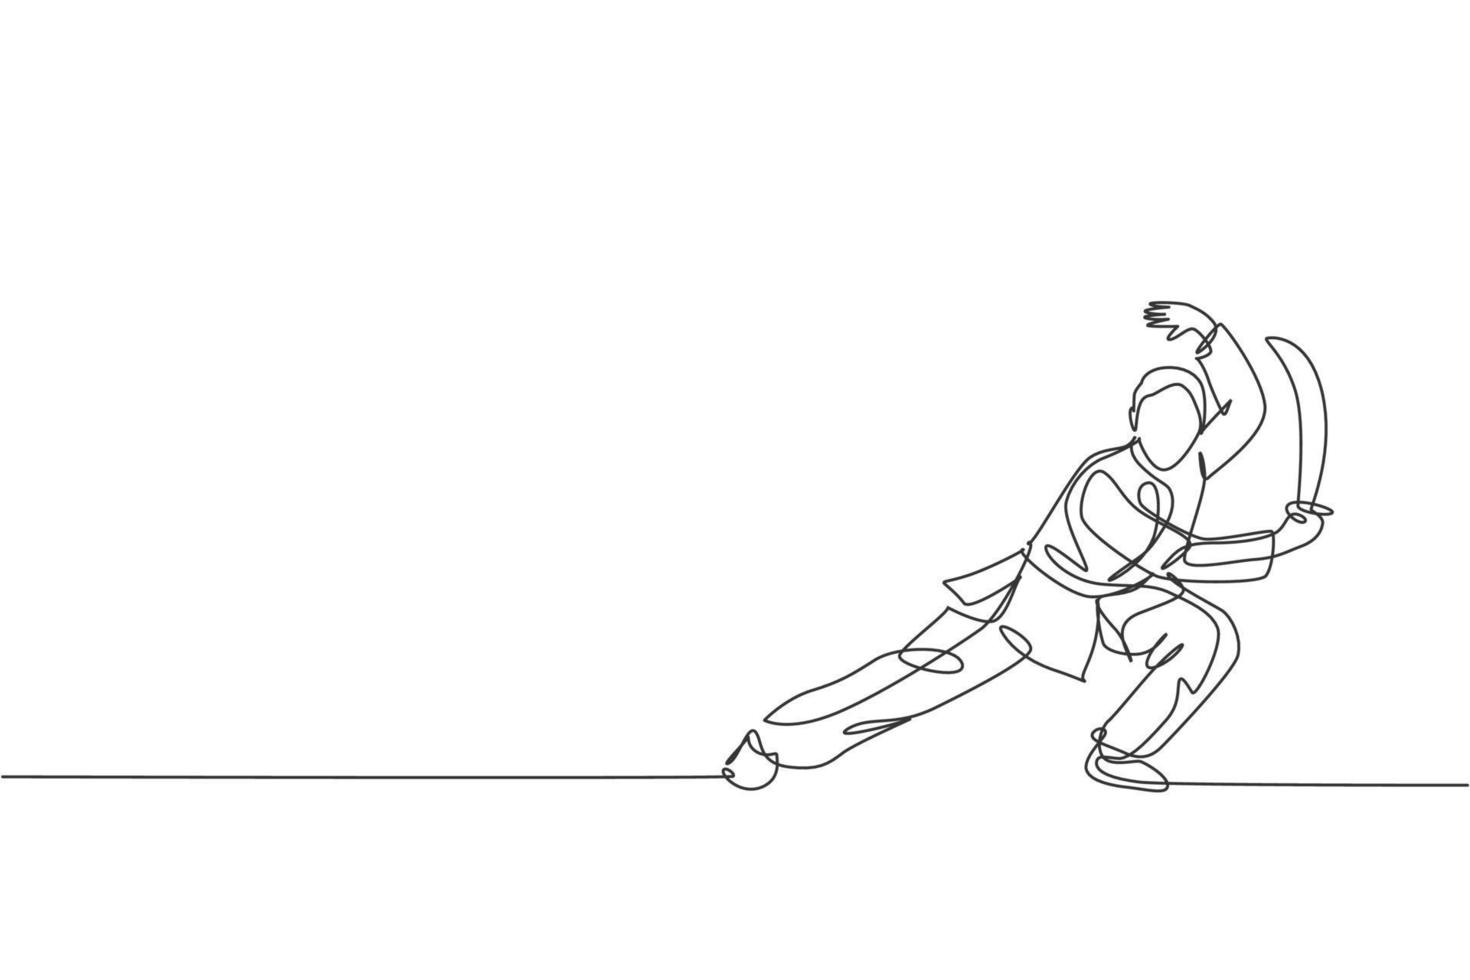 eine durchgehende Strichzeichnung des jungen Wushu-Meisters, Kung-Fu-Krieger im Kimono mit Schwert beim Training. Konzept für Kampfsportwettbewerbe. dynamische einzeilige zeichnen design vektorgrafik illustration vektor